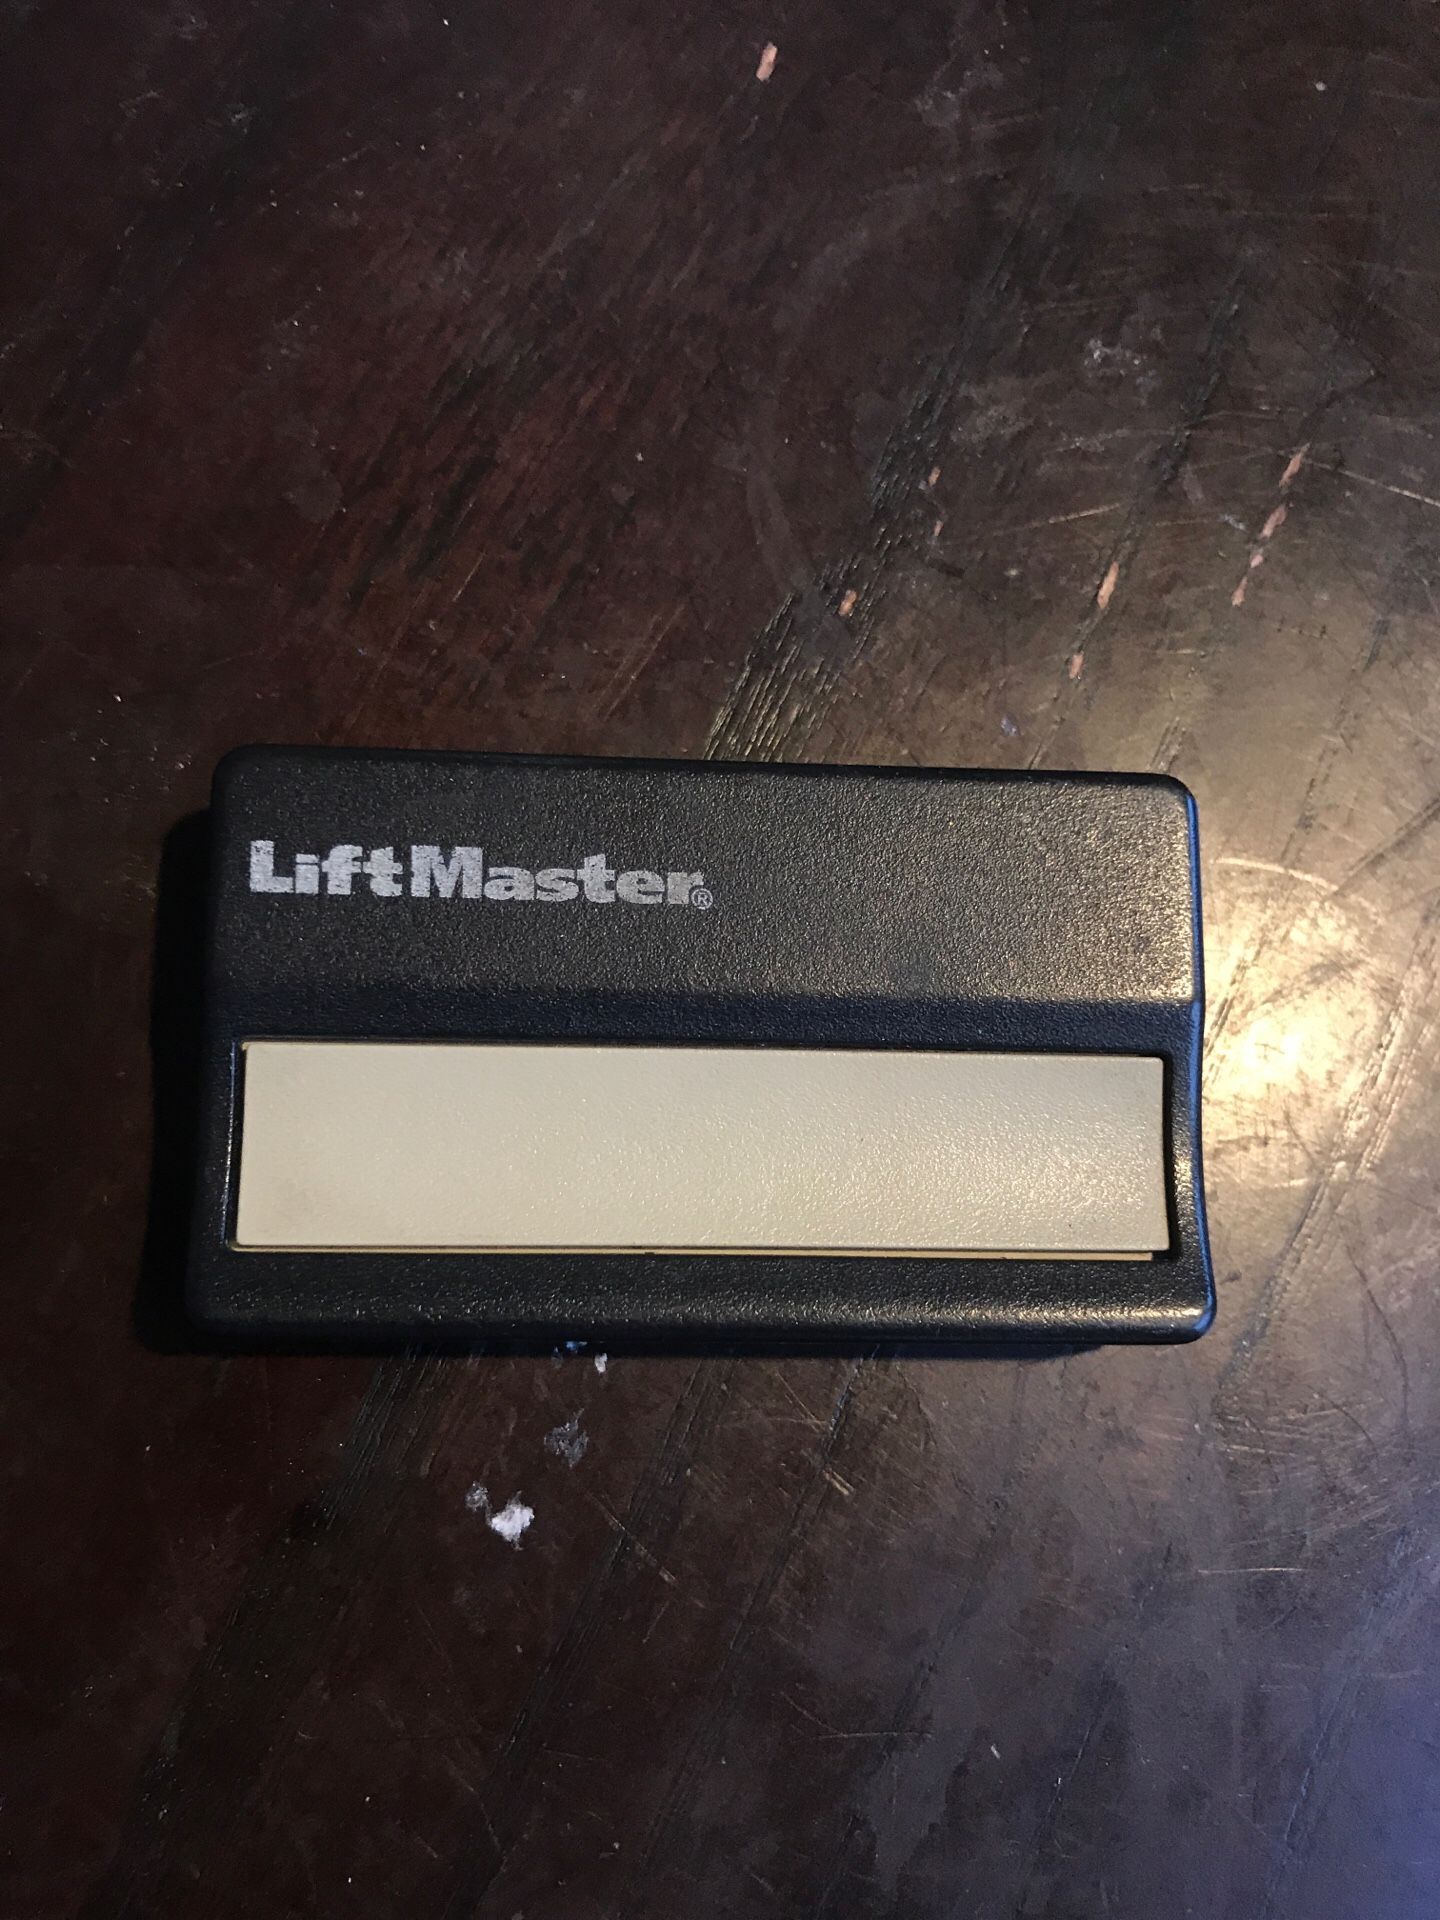 Liftmaster Lift Master Garage Door Opener